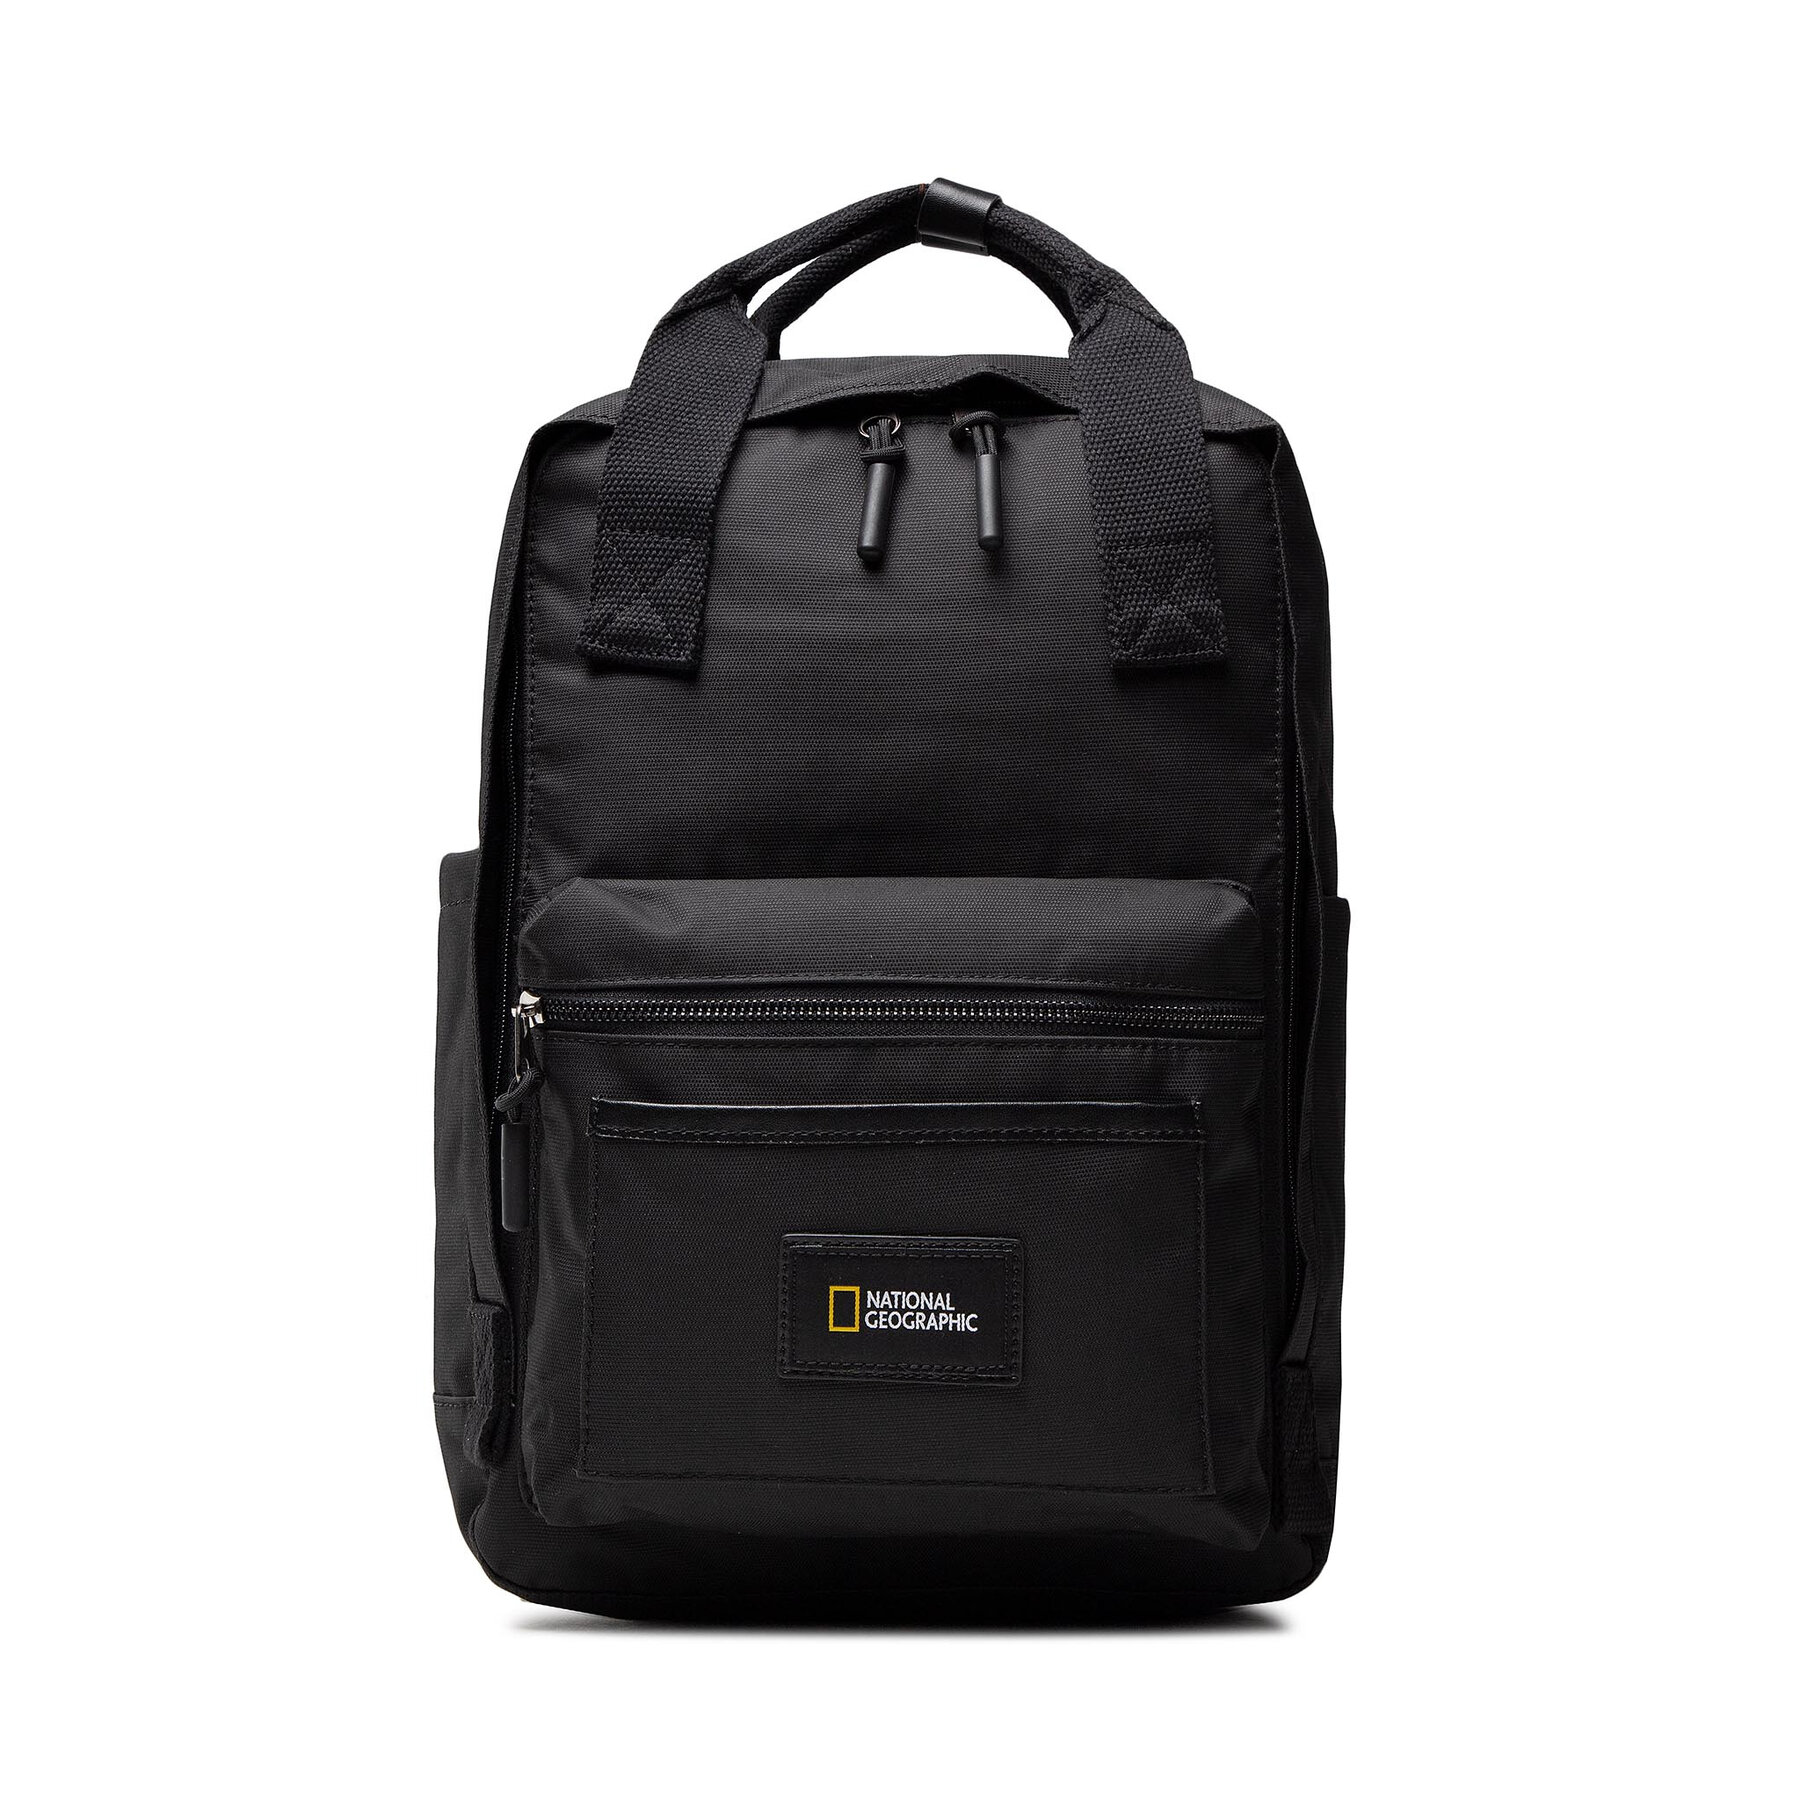 Nahrbtnik National Geographic Large Backpack N19180.06 Black 06